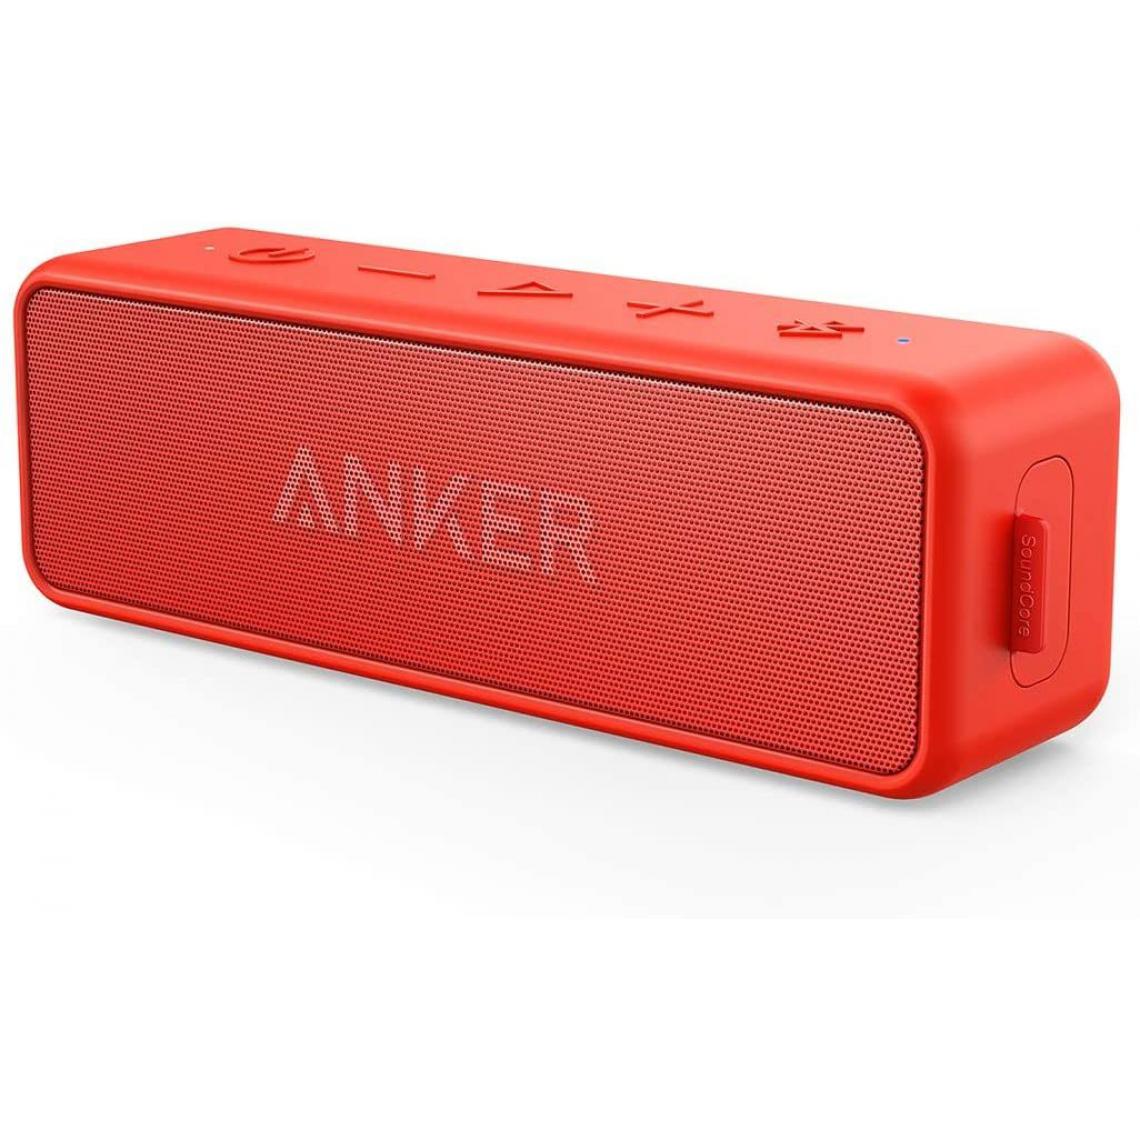 Chrono - Anker Enceinte Bluetooth, SoundCore 2 Haut Parleur Portable sans fil avec basses puissantes, autonomie de 24 heures, porté Bluetooth de 20 m, étanche waterproof IPX7 et microphone intégré,Rouge - Enceintes Hifi